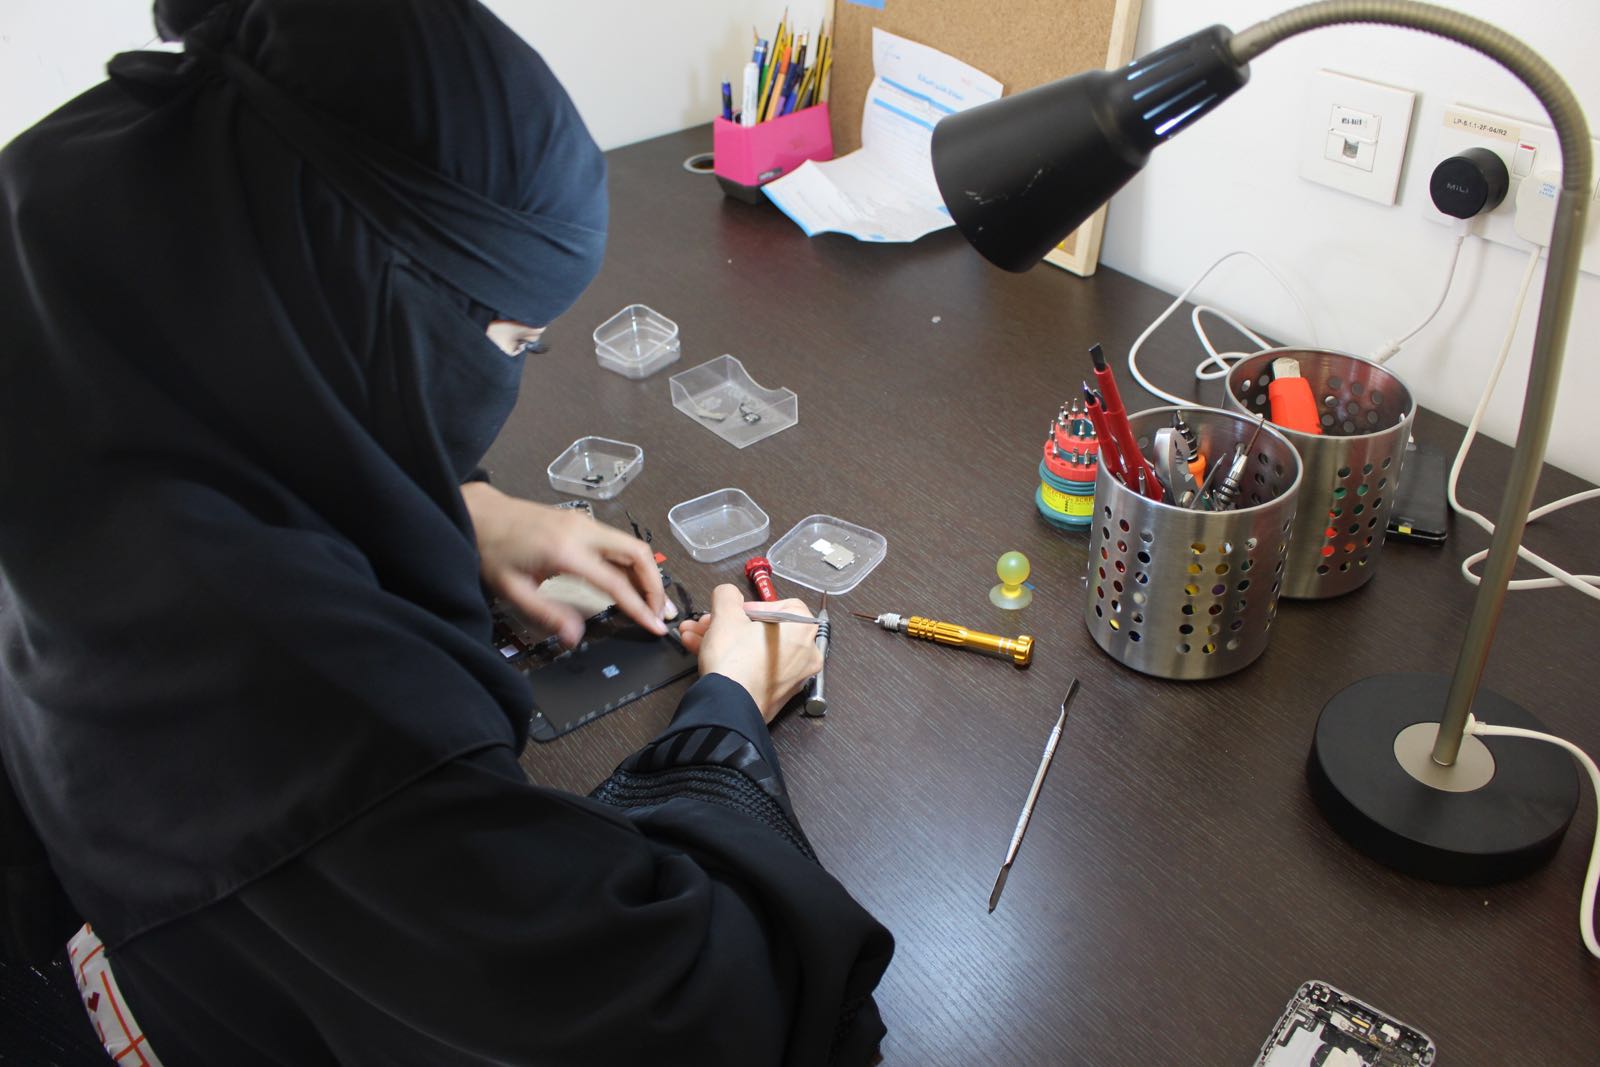 استطاعت المرأة السعودية إثبات كفاءتها في صيانة أجهزة الجوالات